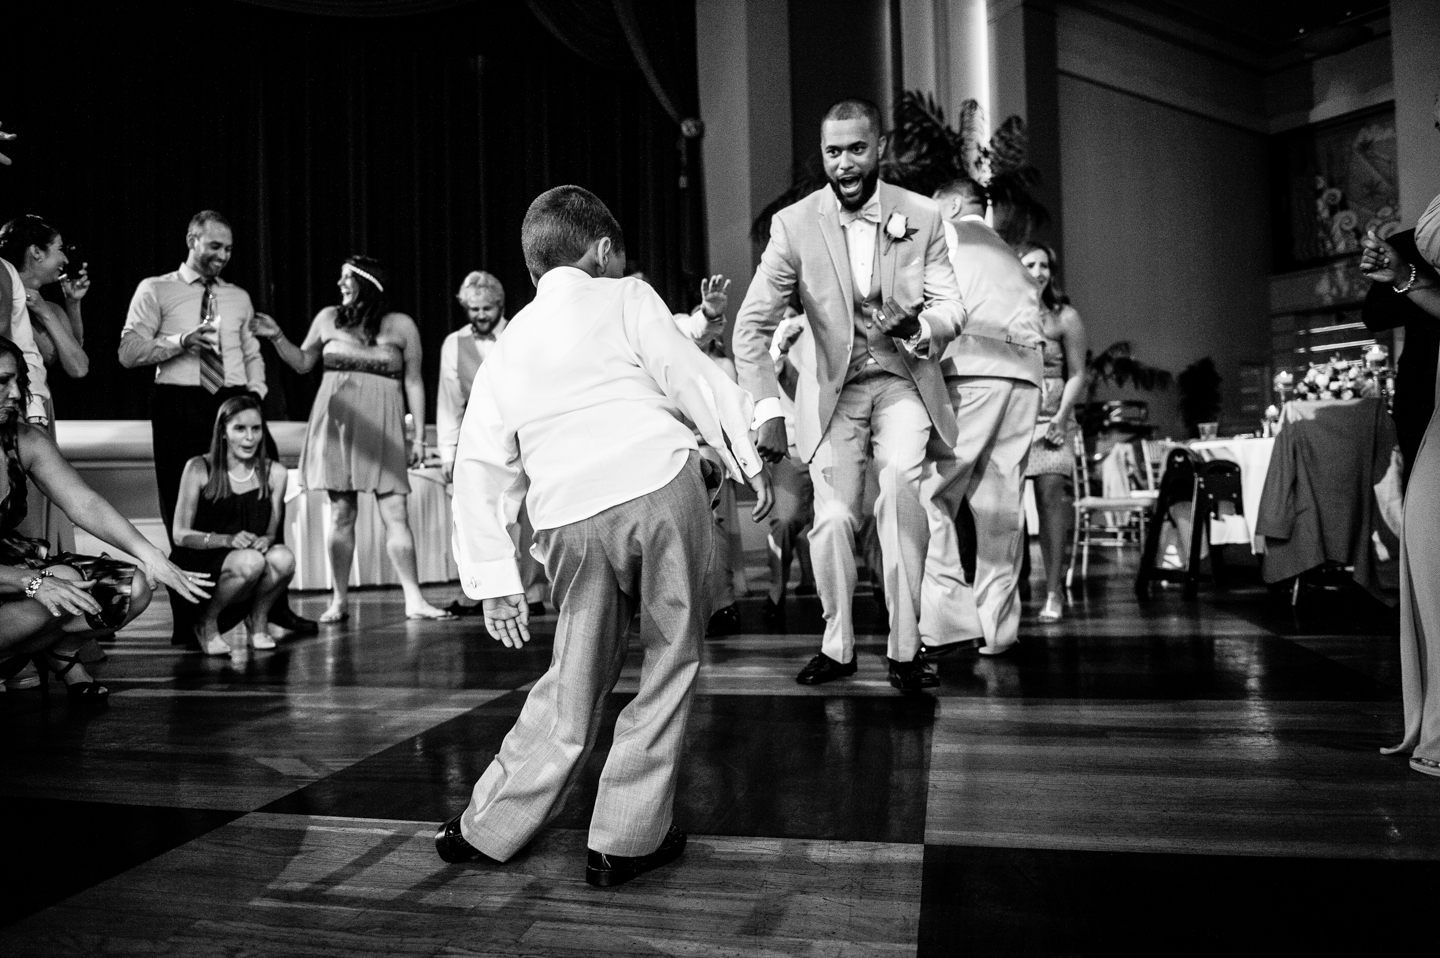 groom and ringer bearer dancing at atlantic city dance hall 